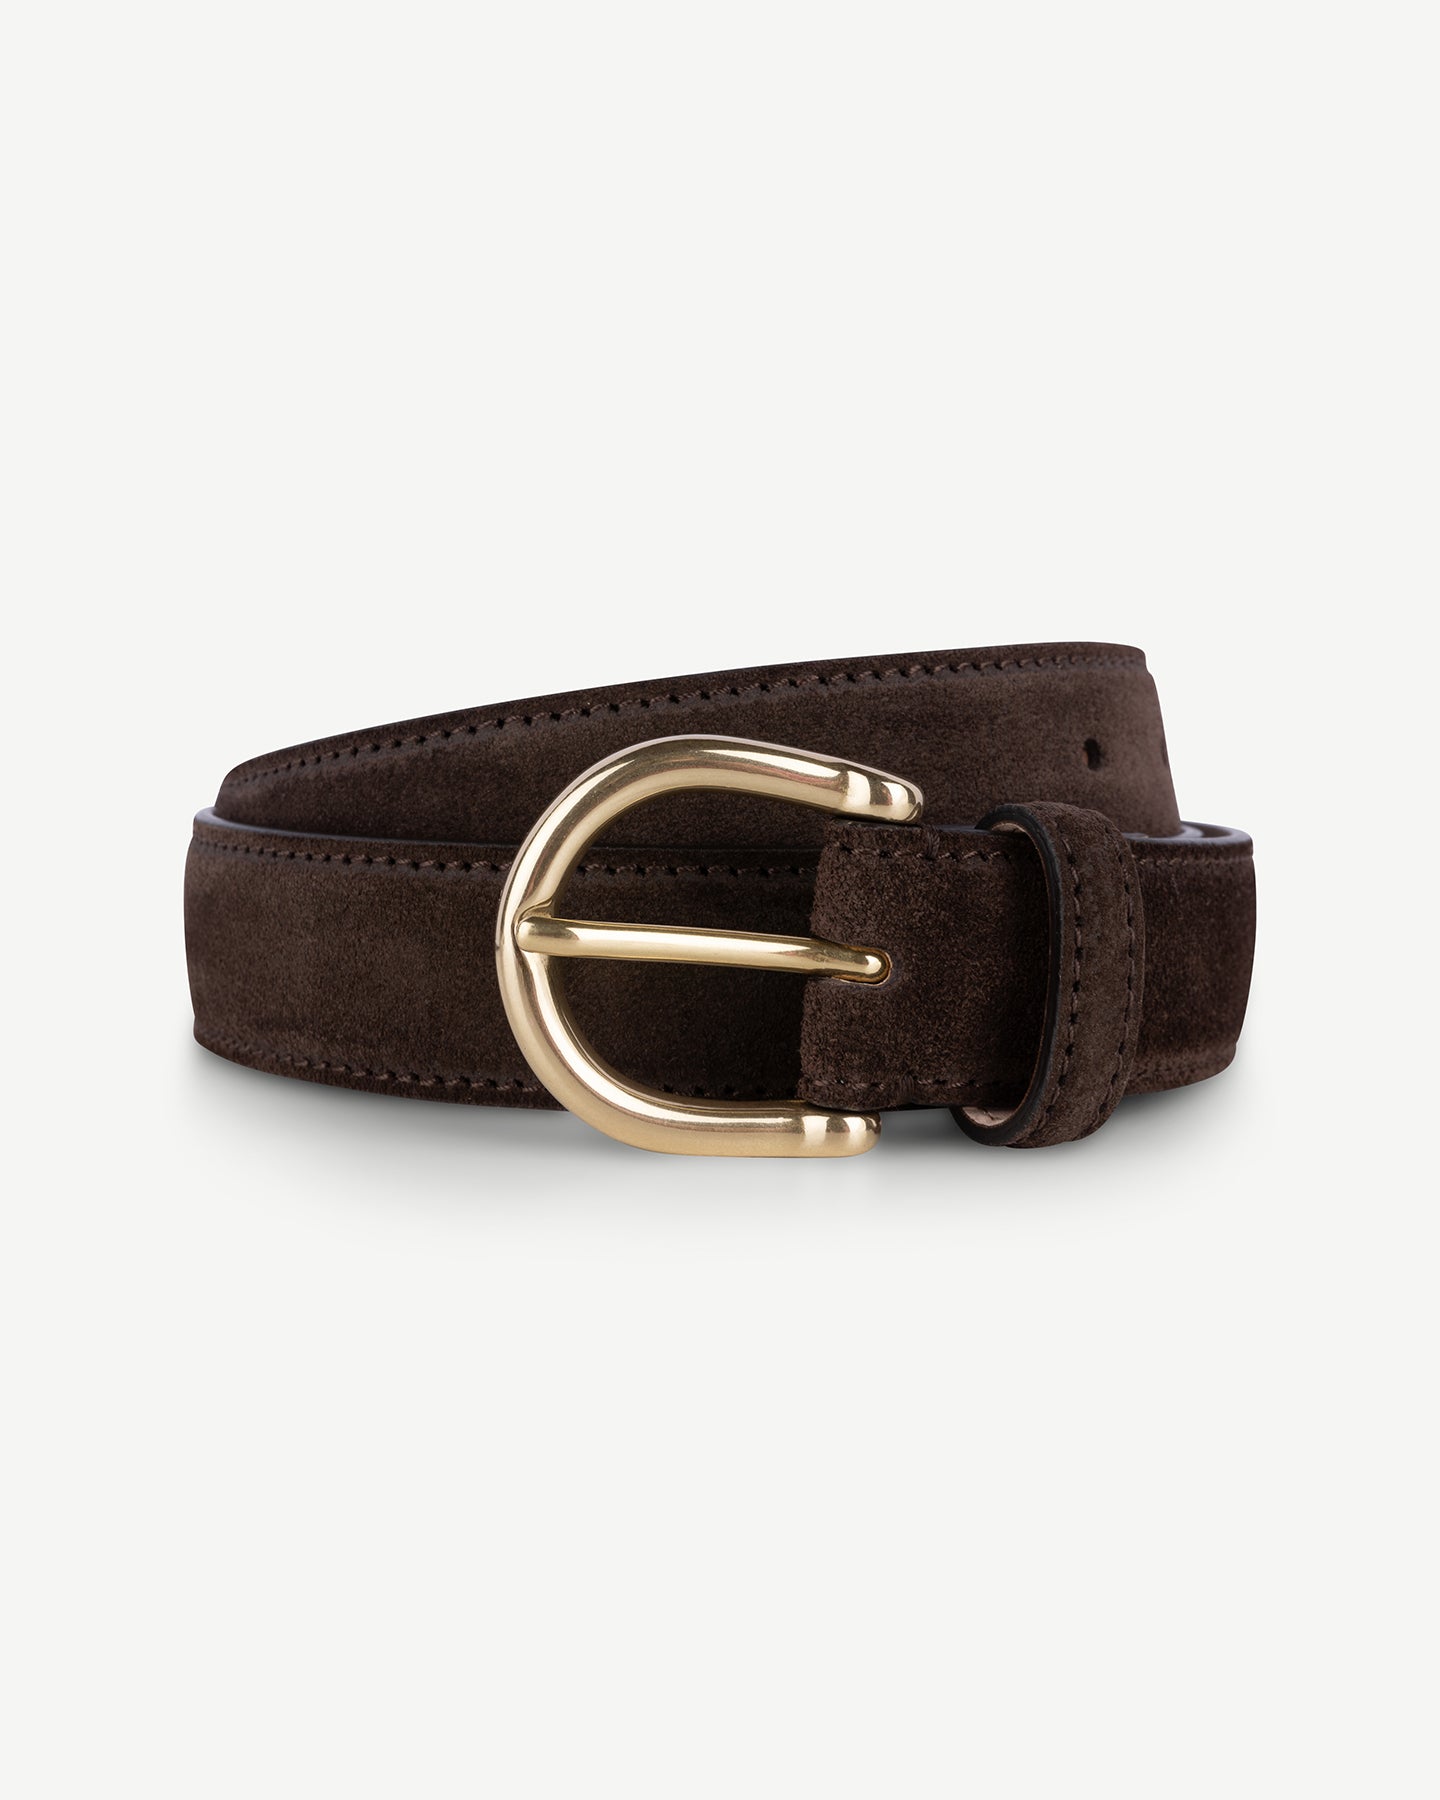 Dark brown suede dress belt